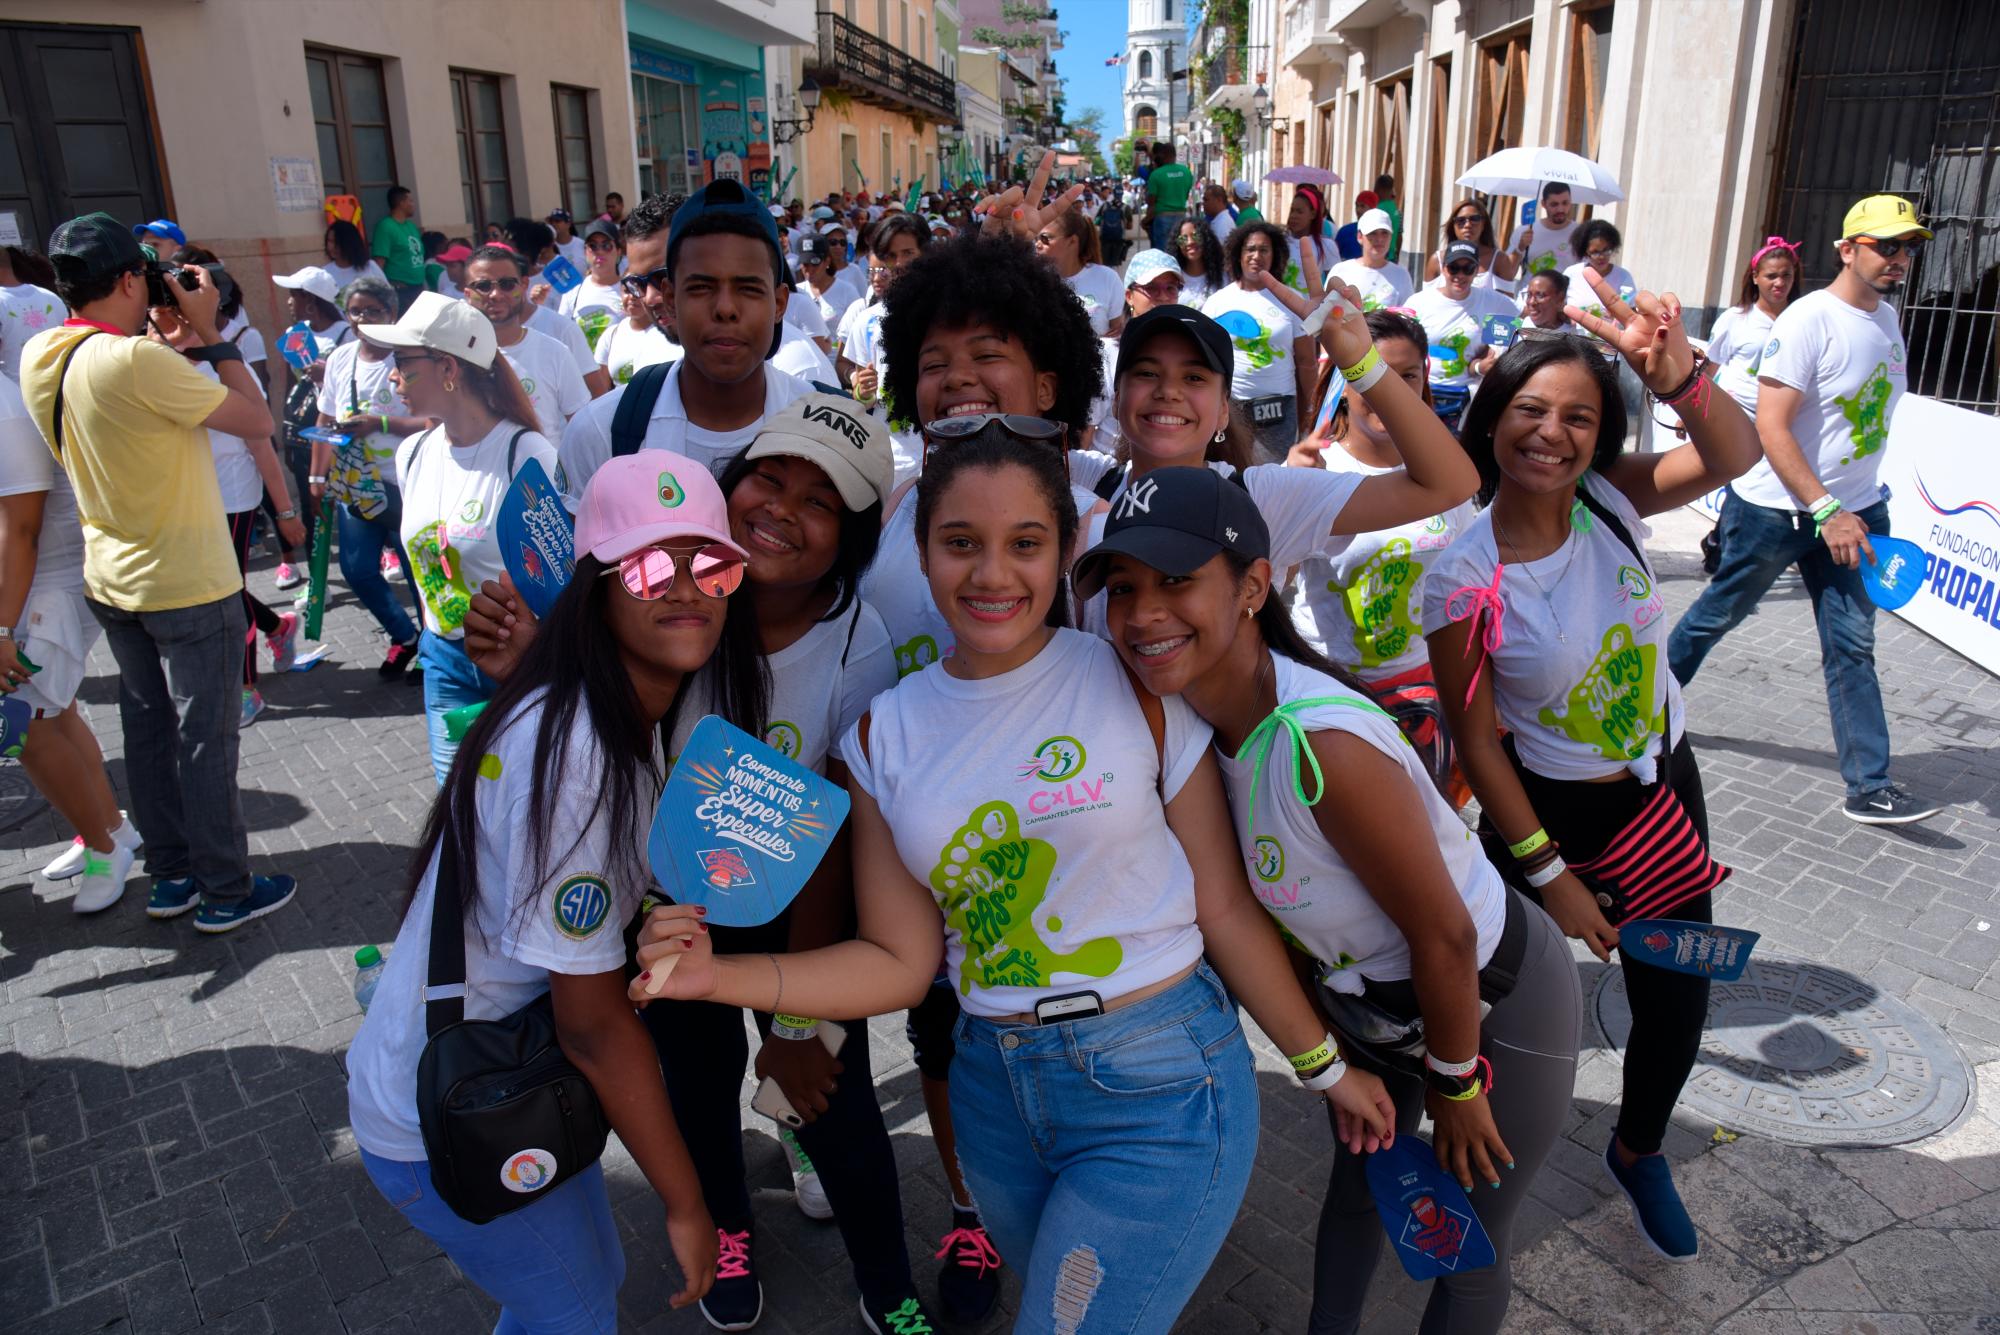 “Caminantes por la vida 2019”, evento que reunió a los dominicanos para que la Fundación Caminantes por la Vida siga su misión de concientizar de manera solidaria sobre el cáncer, la importancia de la detección temprana.